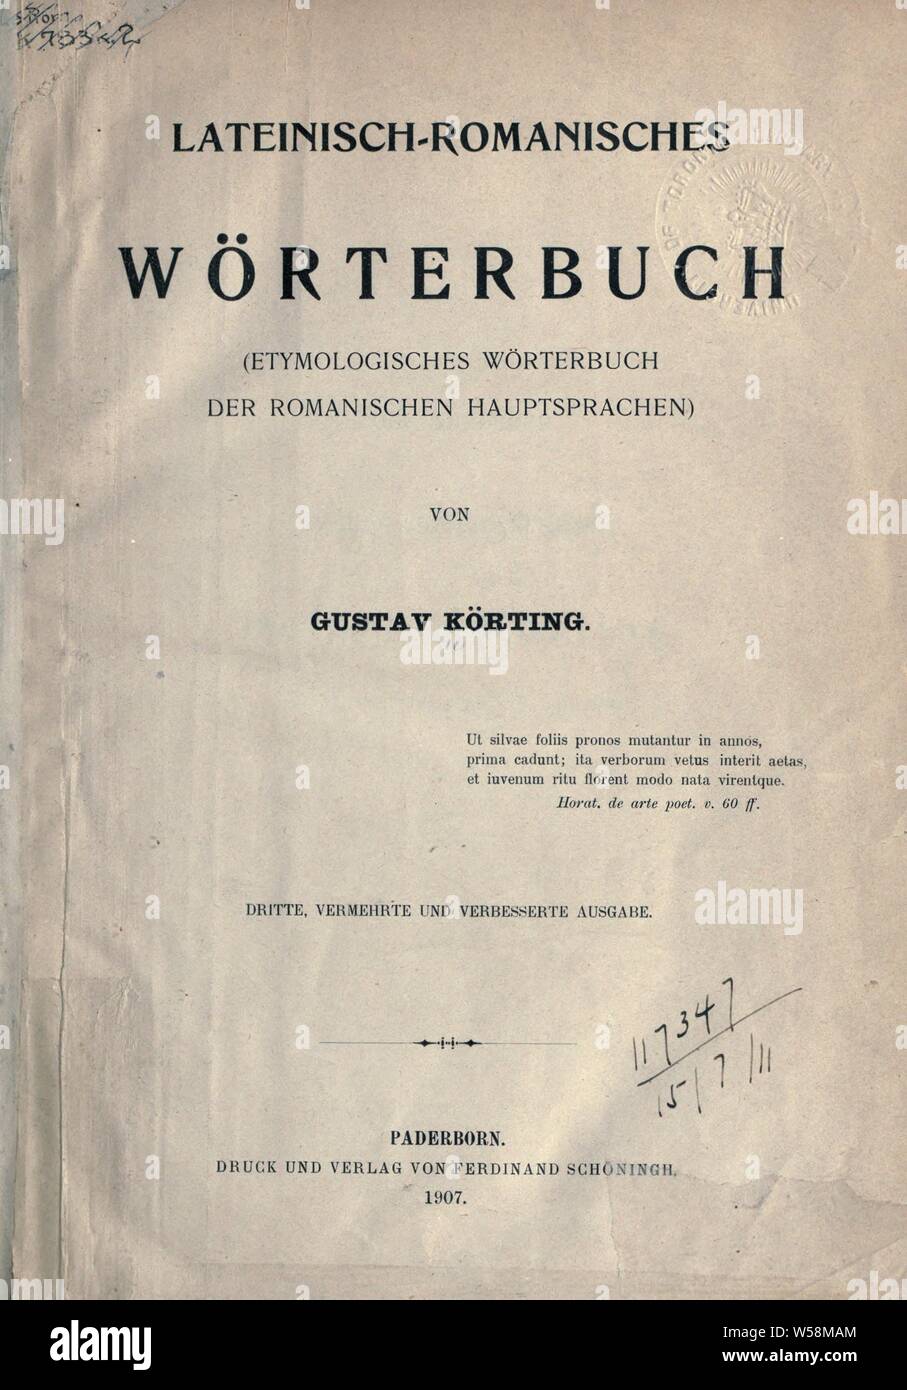 Lateinisch-romanisches Wörterbuch (etymologisches Wörterbuch der romanischen Hauptsprachen) : Körting, Gustav Carl Otto, 1845-1913 Foto Stock